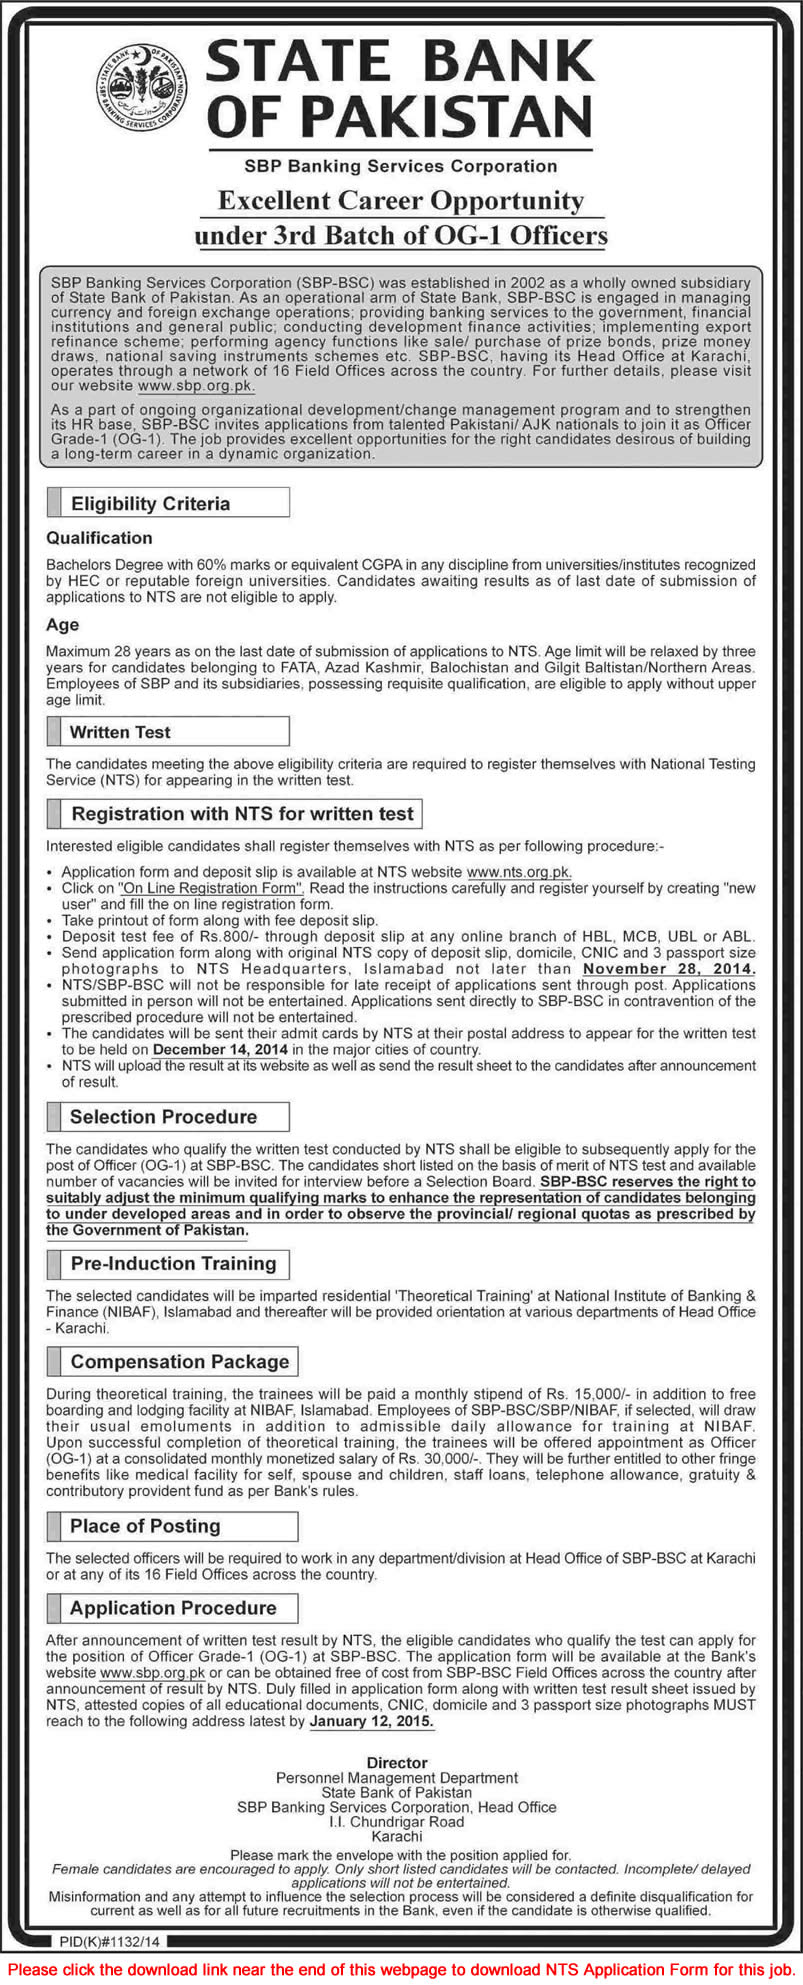 State Bank of Pakistan Jobs November 2014 OG-1 Officers NTS Application Form Download